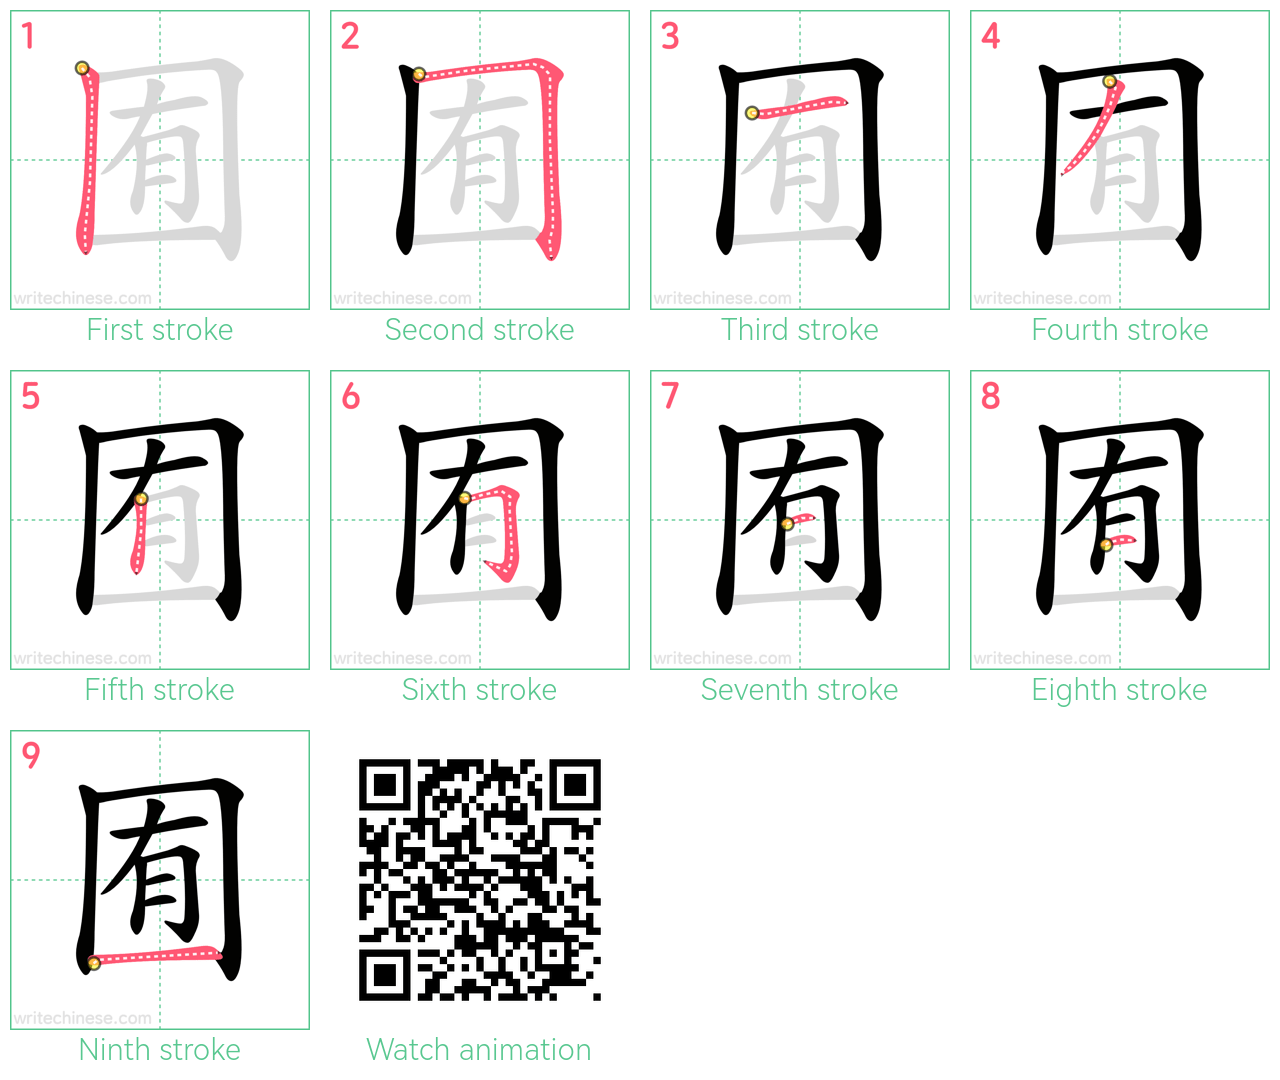 囿 step-by-step stroke order diagrams